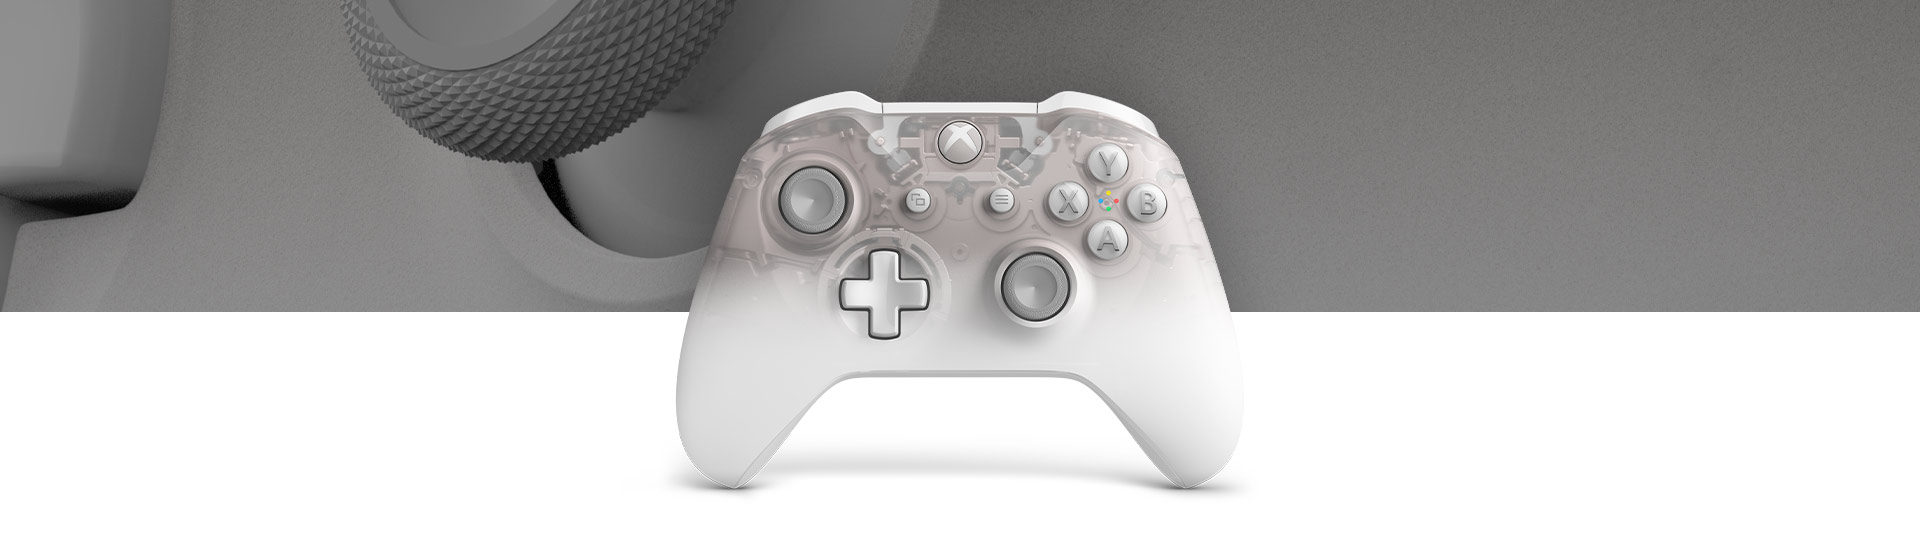 Xbox 幻影白无线控制器正视图，以及幻影白控制器表面纹理的近景